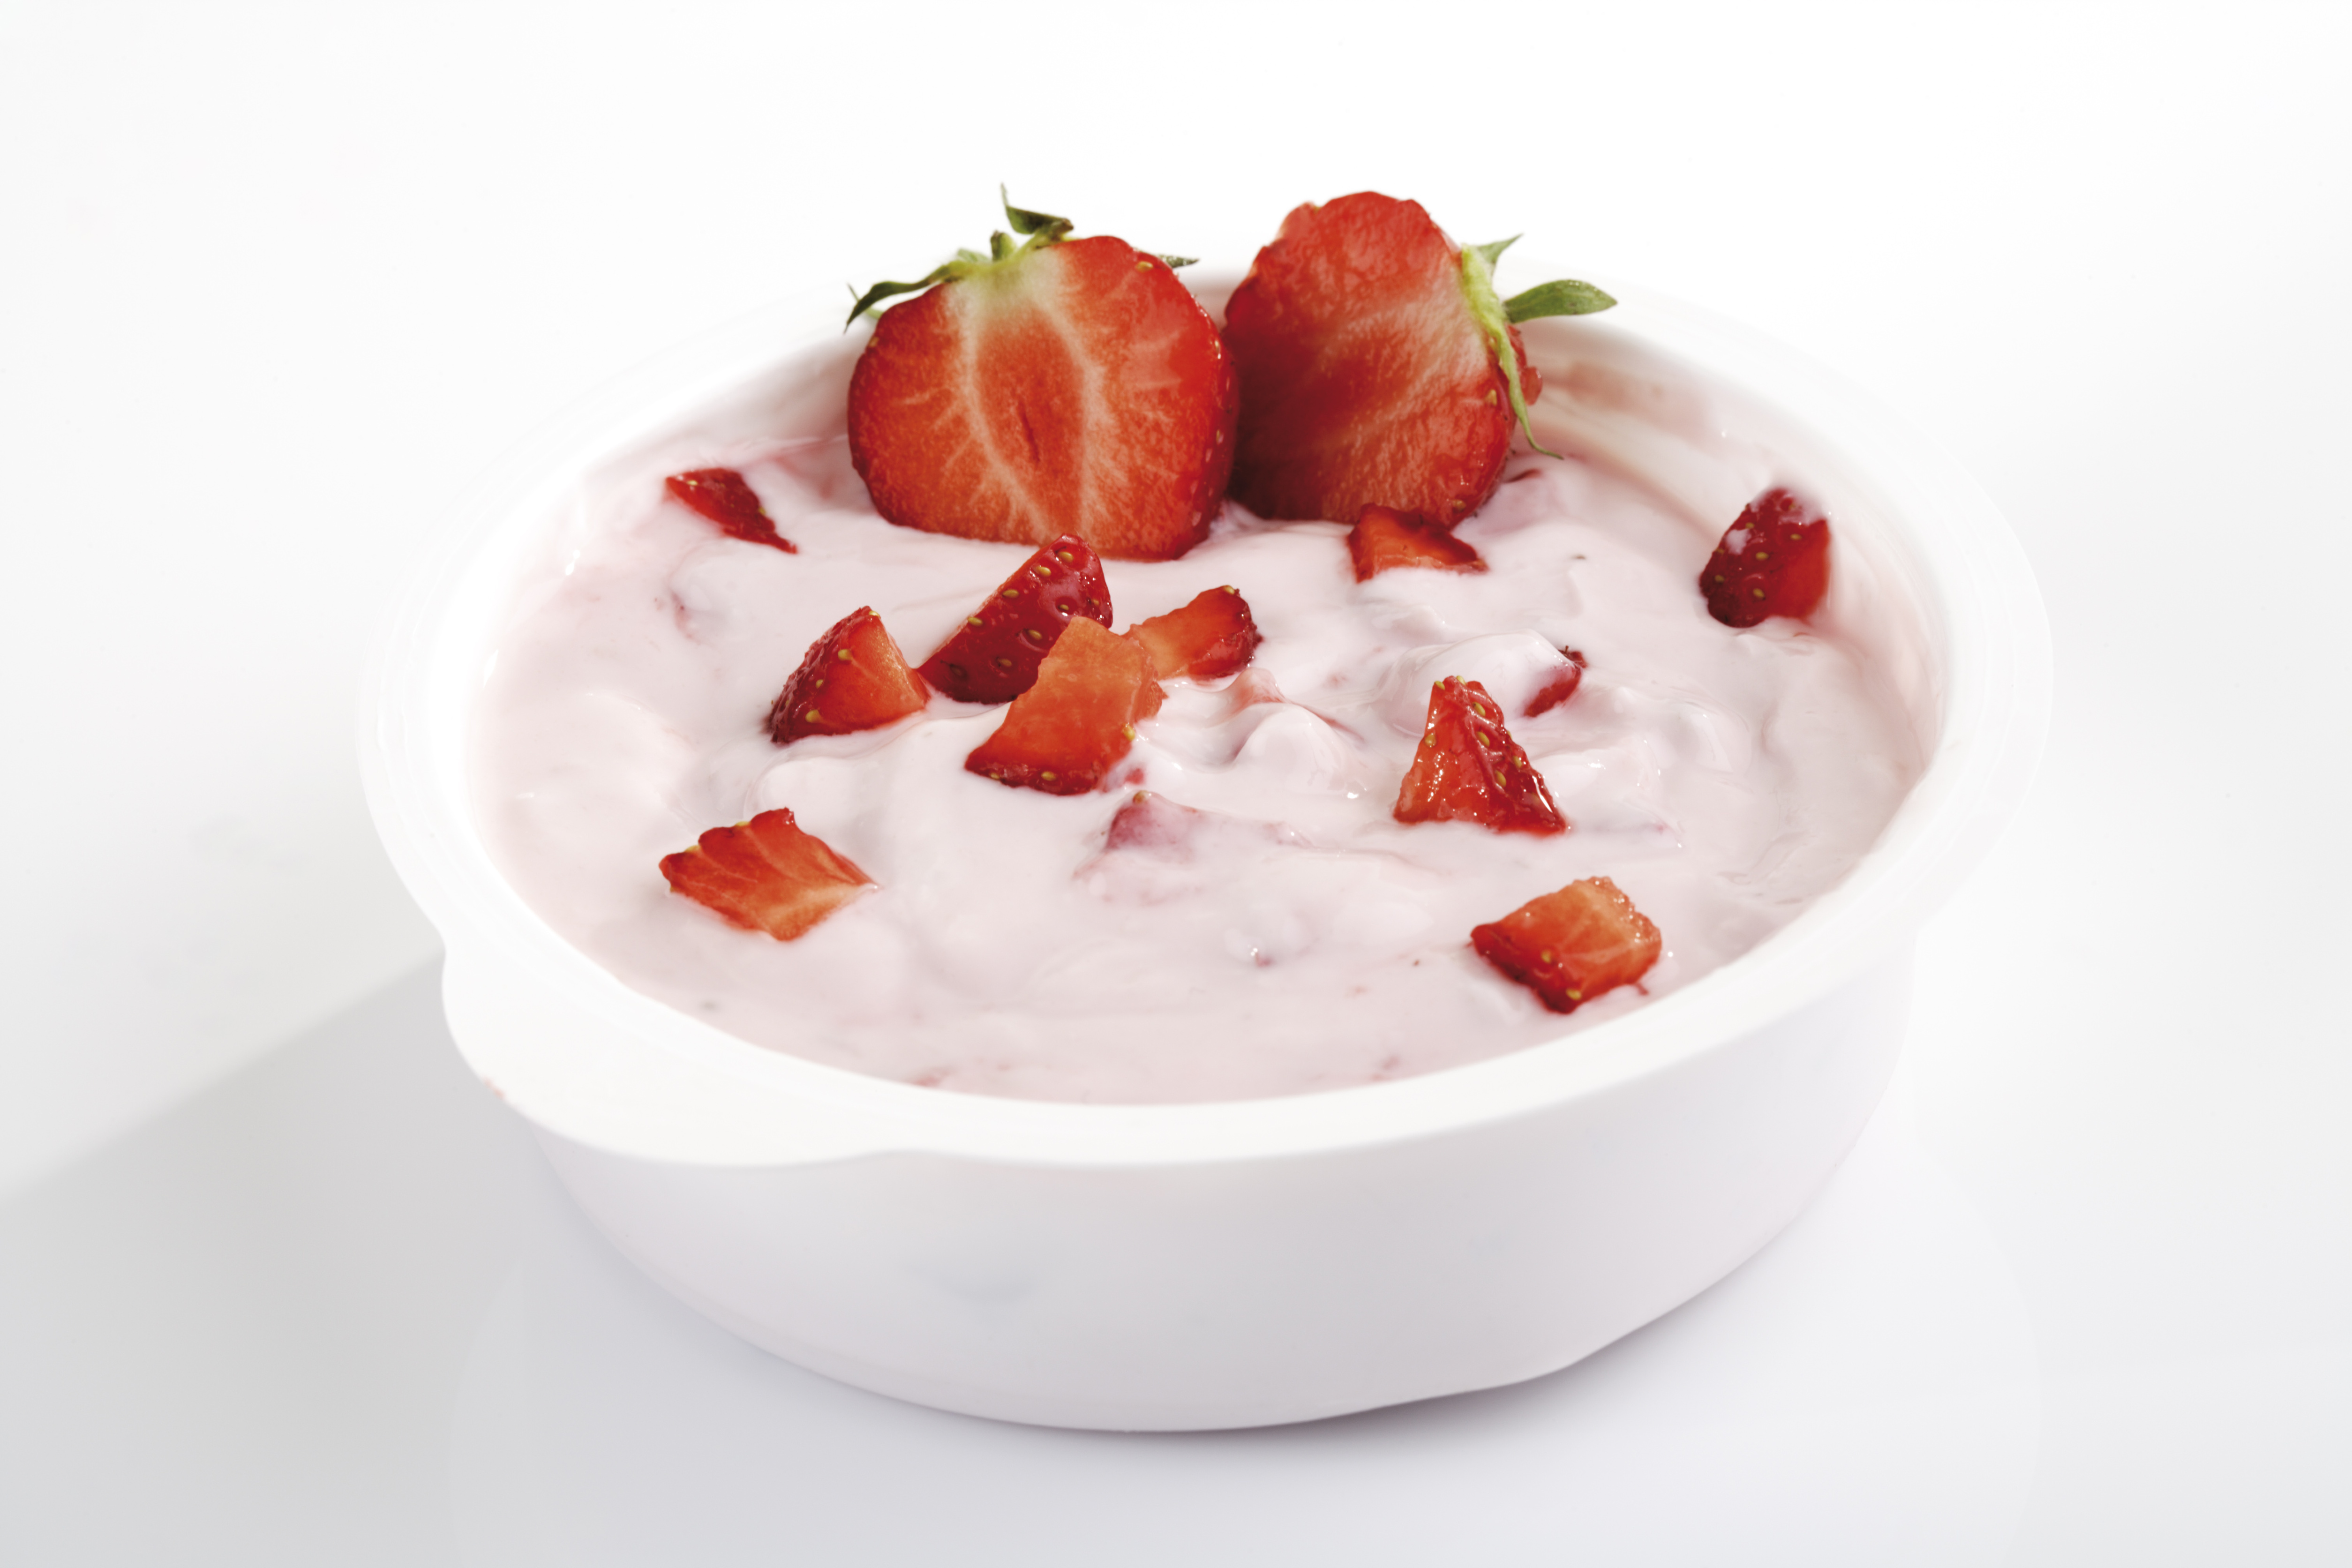 "Liebhaber von Erdbeerjoghurt haben oft eine pflegende Seite und spenden ihren Lieben Trost und Halt"